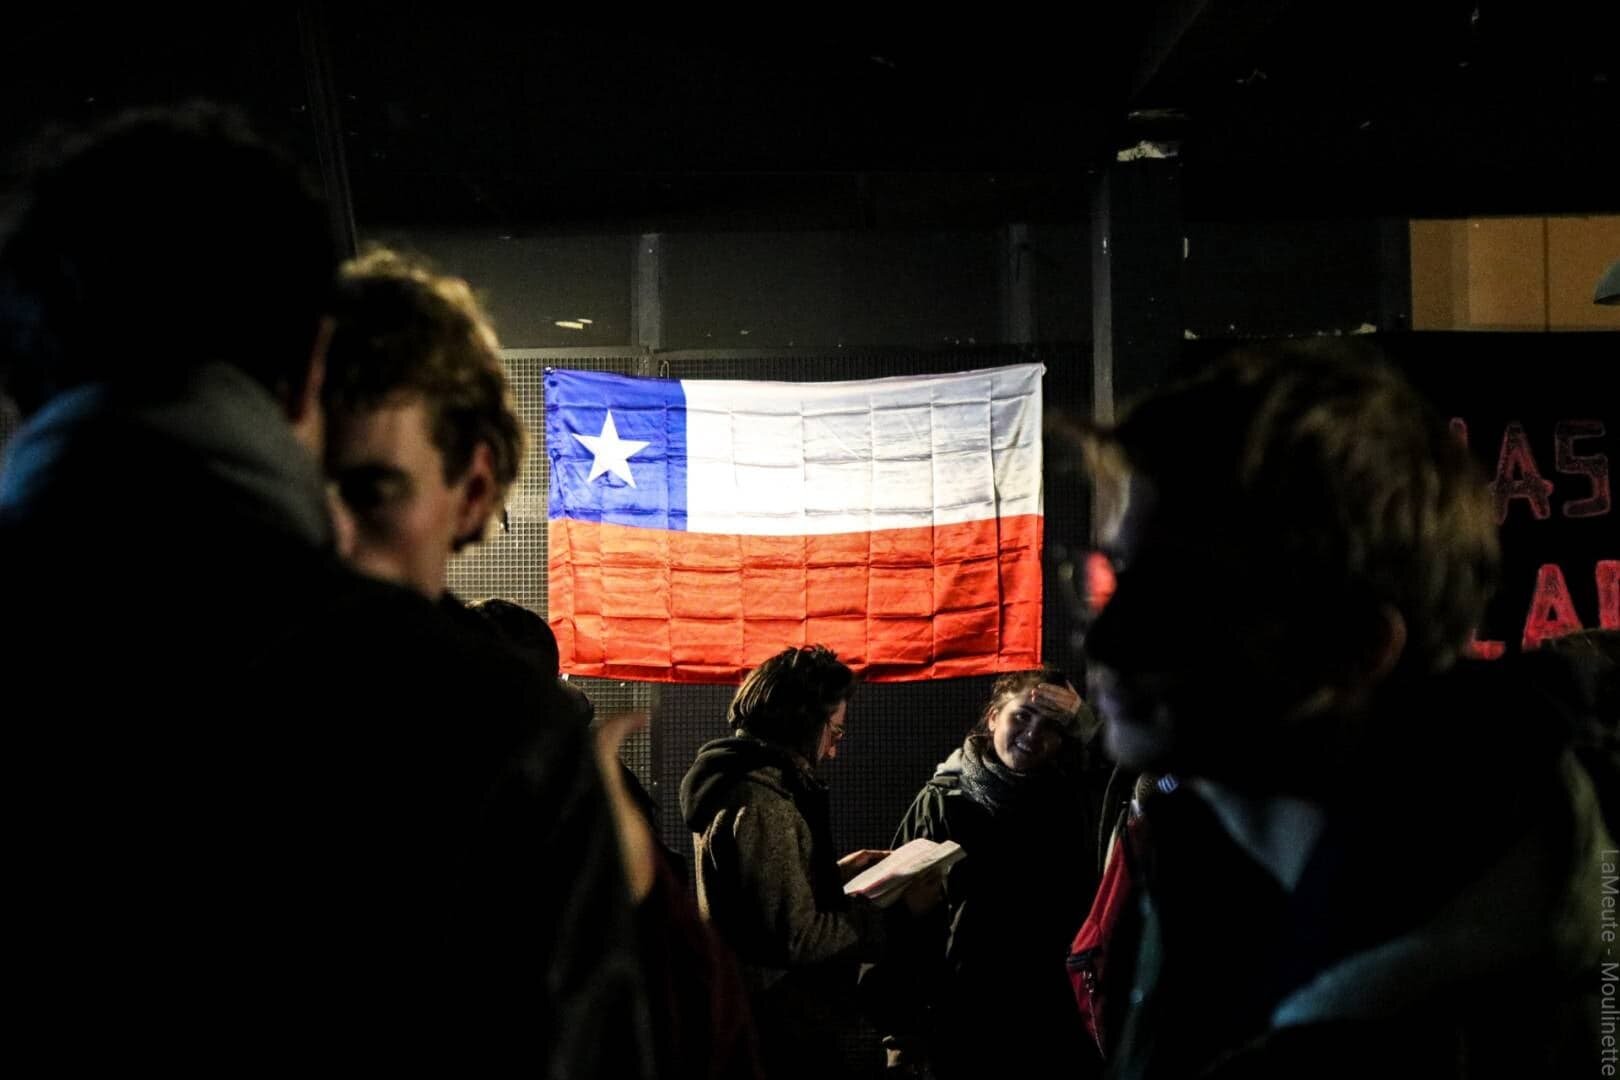  Le collectif des  Chiliens Révoltés  a décoré la salle de drapeaux chiliens. Les occupant.es affichent clairement leur solidarité aux peuples révoltés du monde entier. 